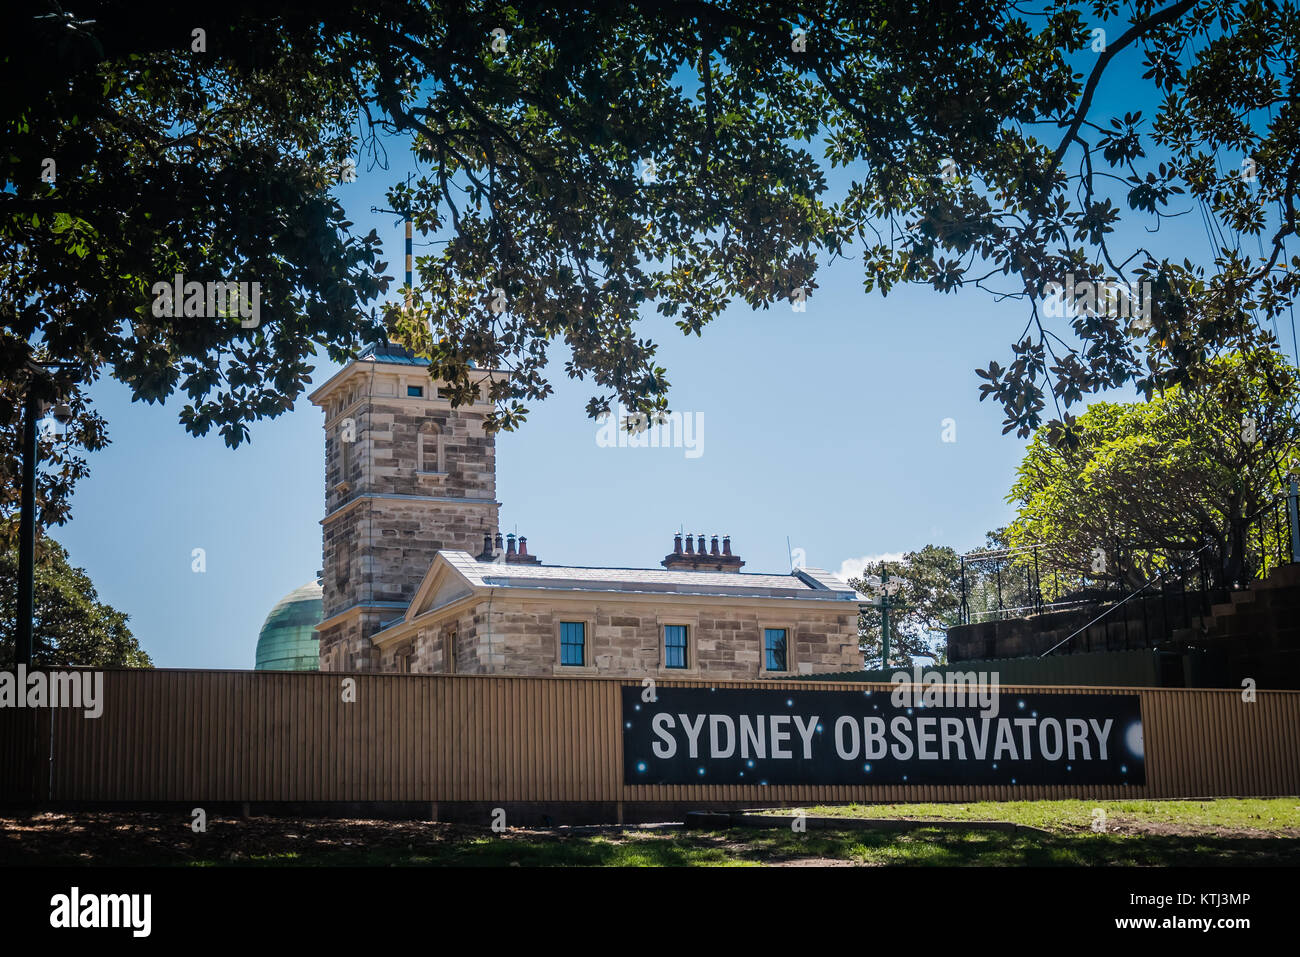 sydney observatory building Stock Photo